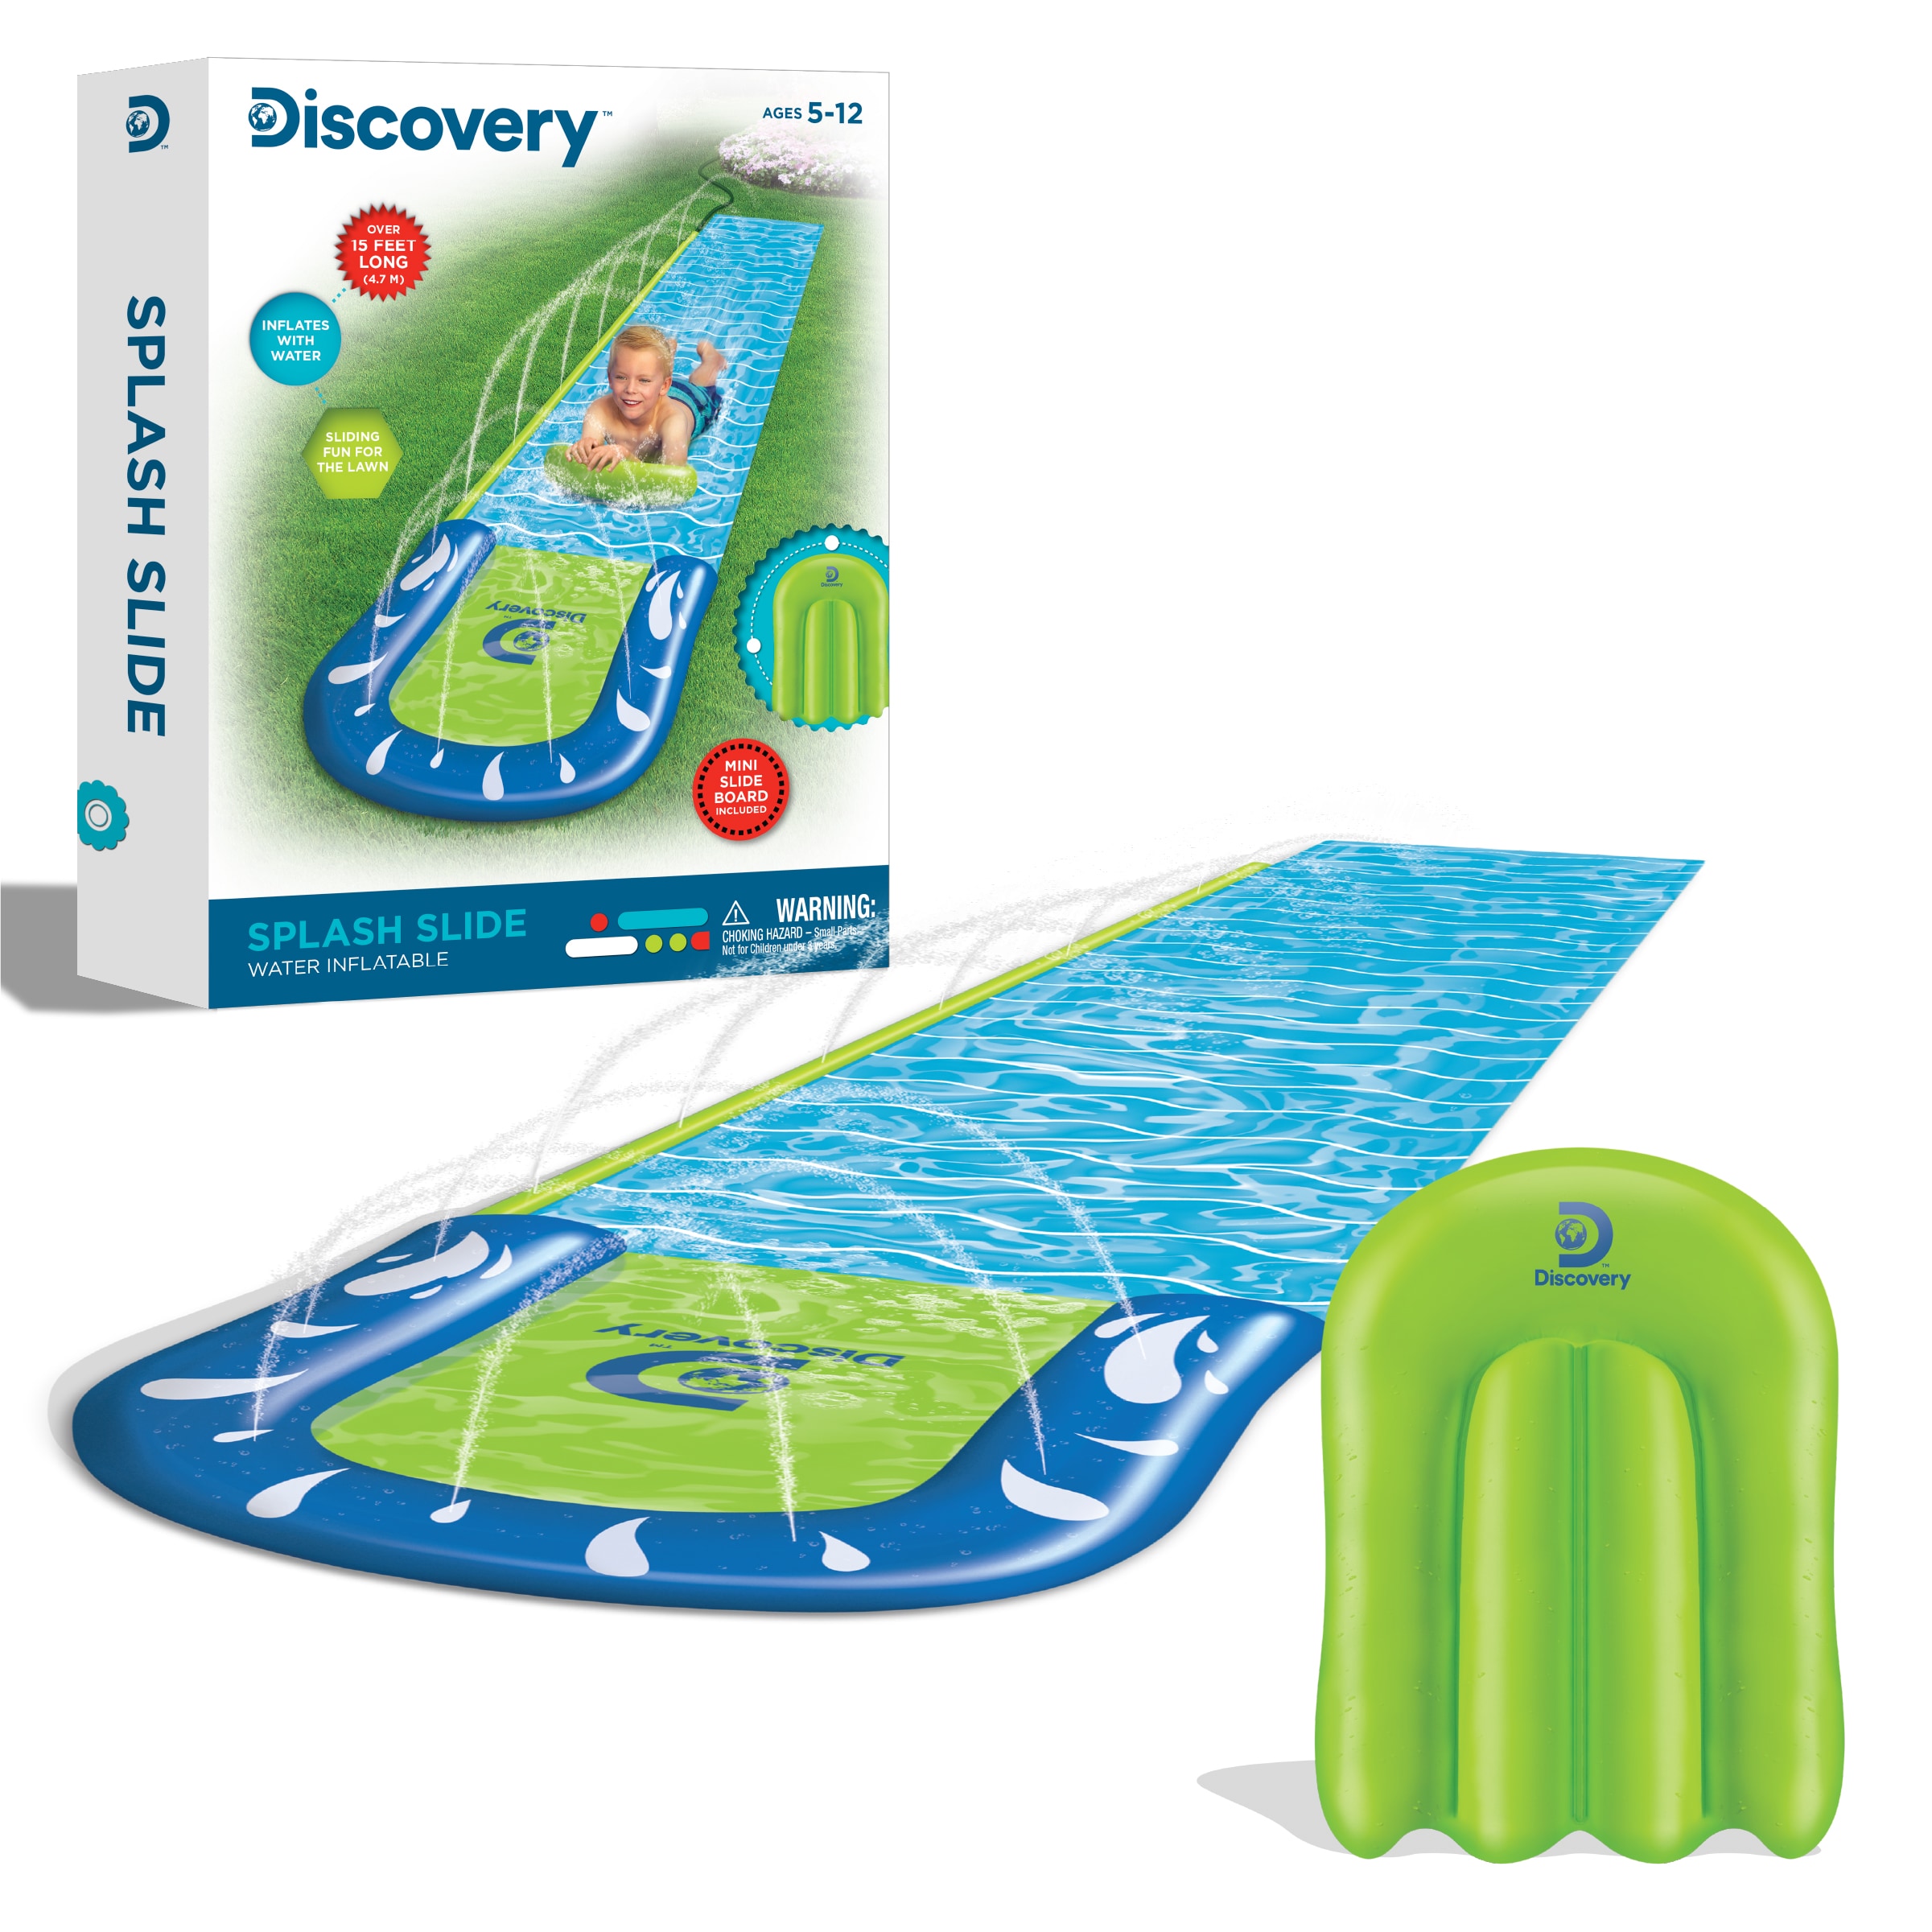 efficiënt Onbelangrijk binnenvallen Discovery Kids Outdoor Water Slide in the Party Games department at  Lowes.com